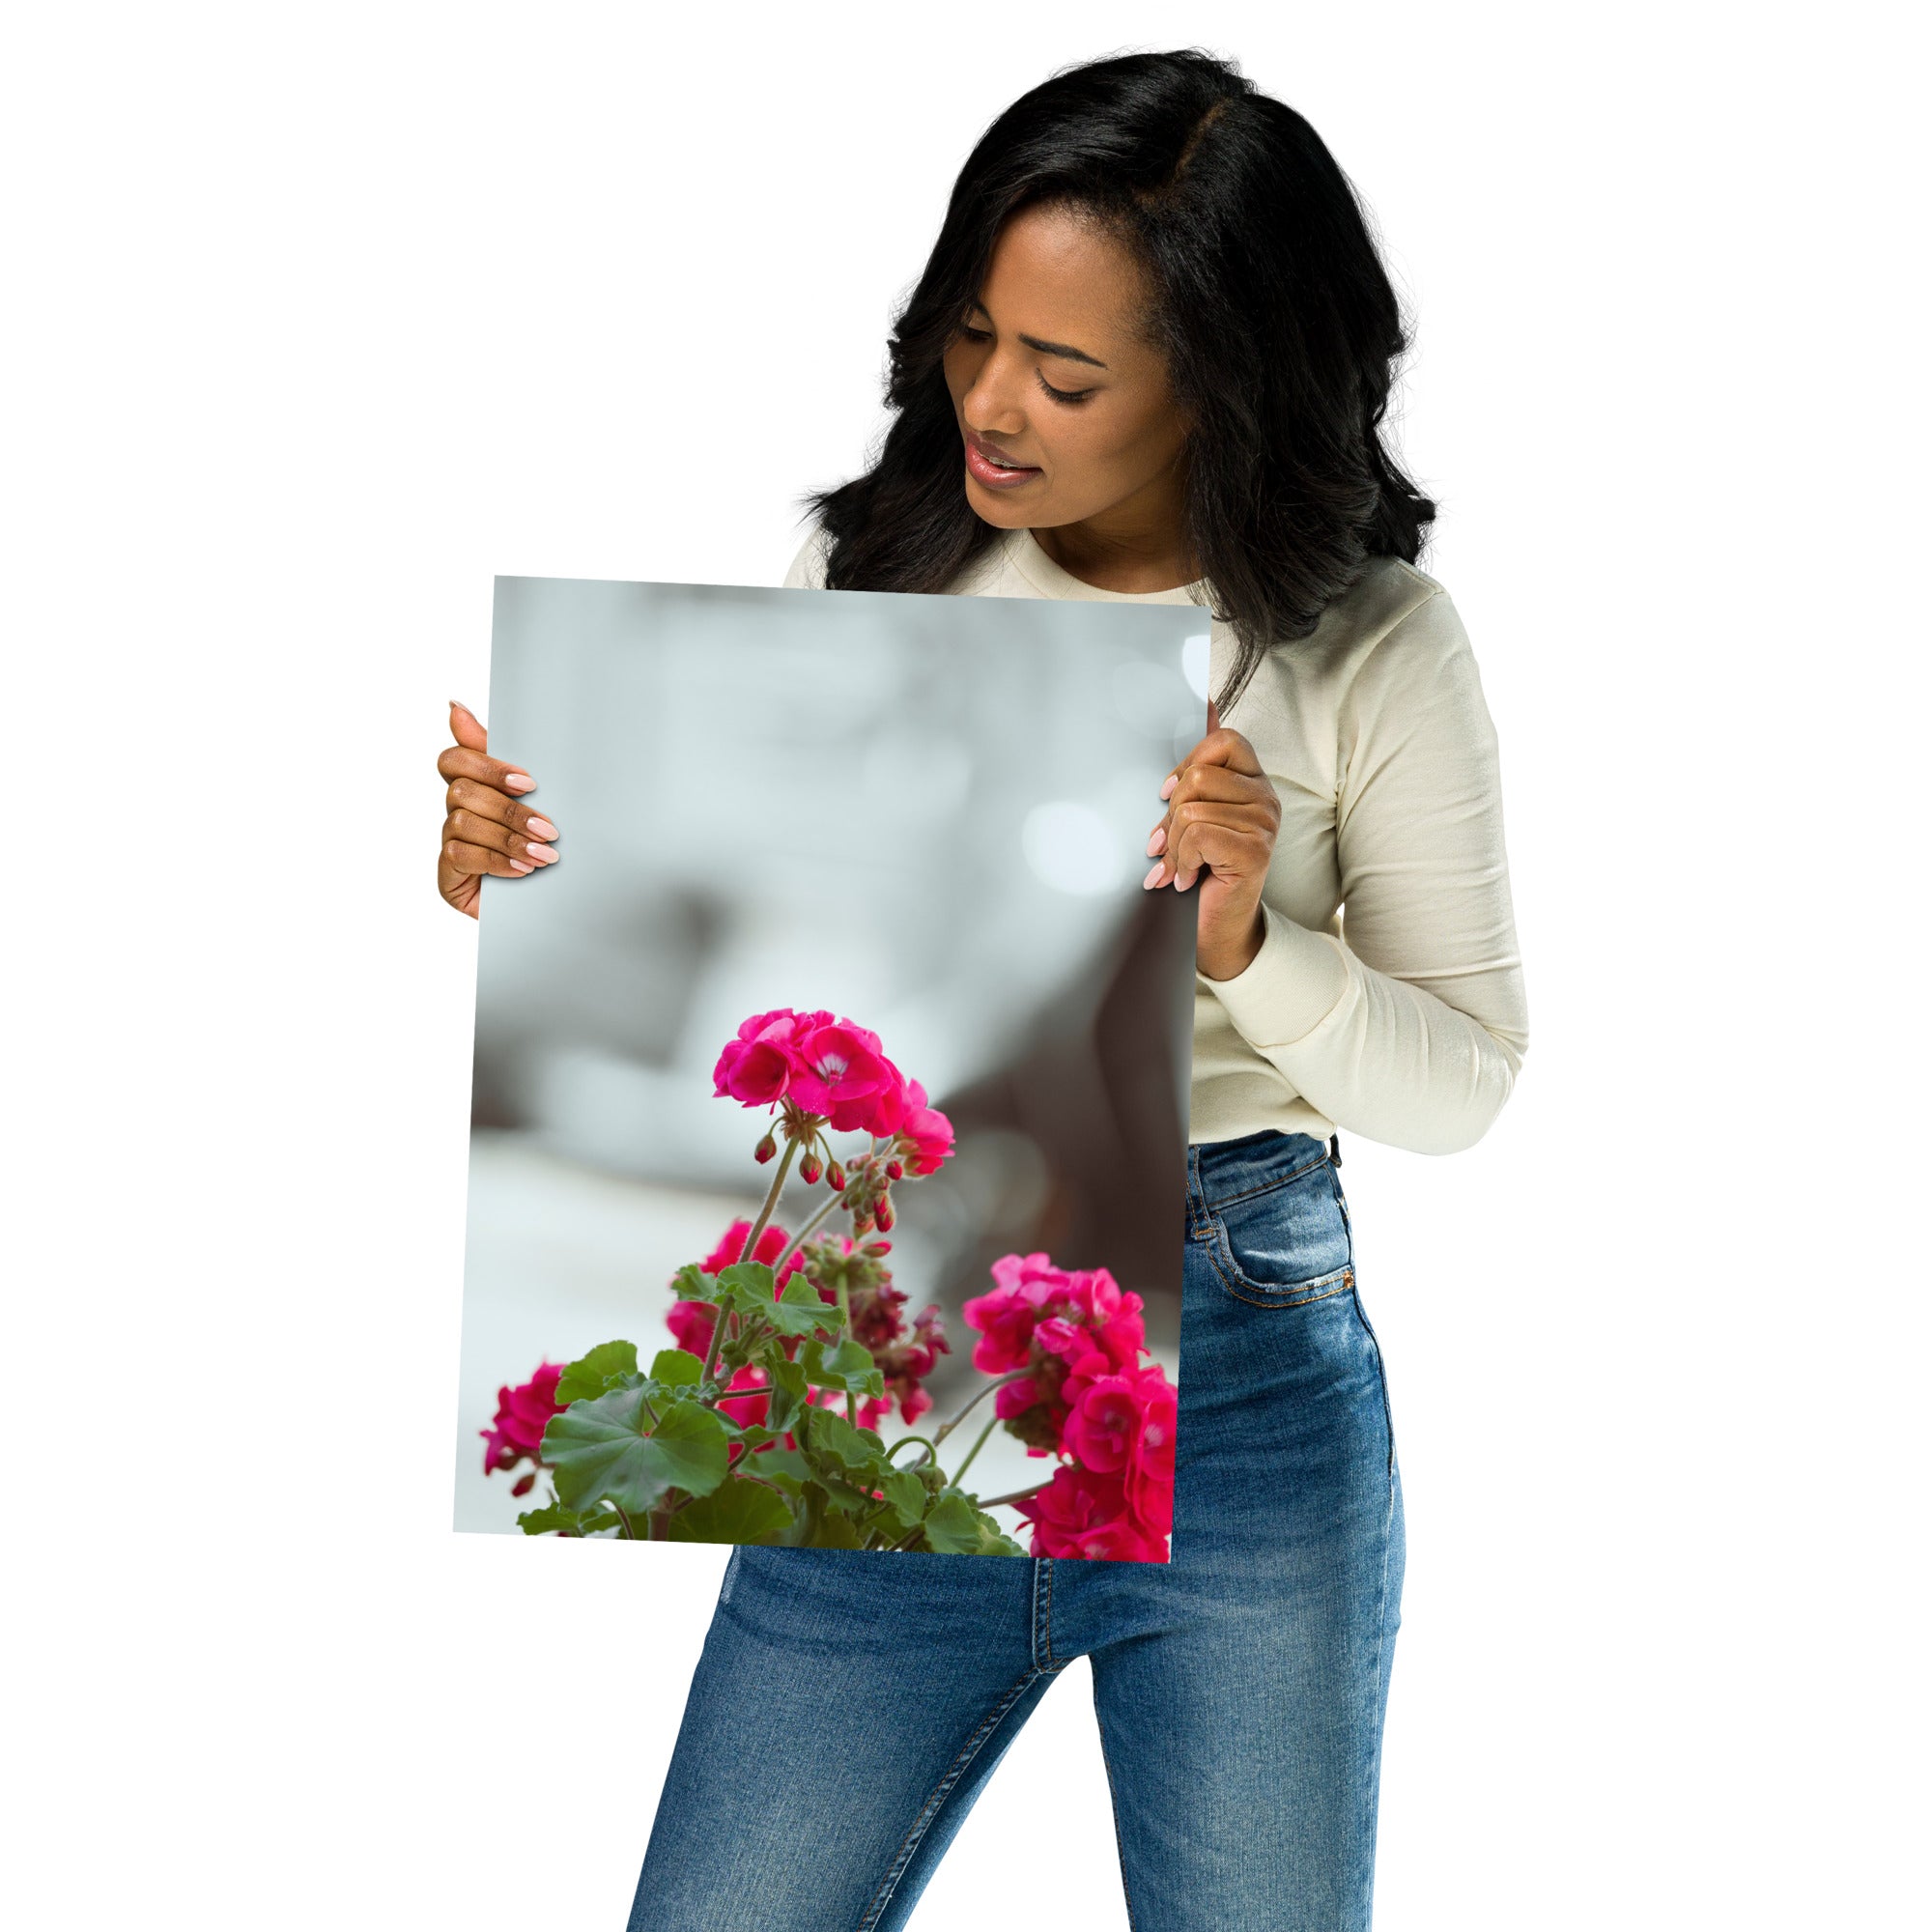 Poster 'Géraniums' présentant une photographie détaillée de géraniums en pleine floraison.